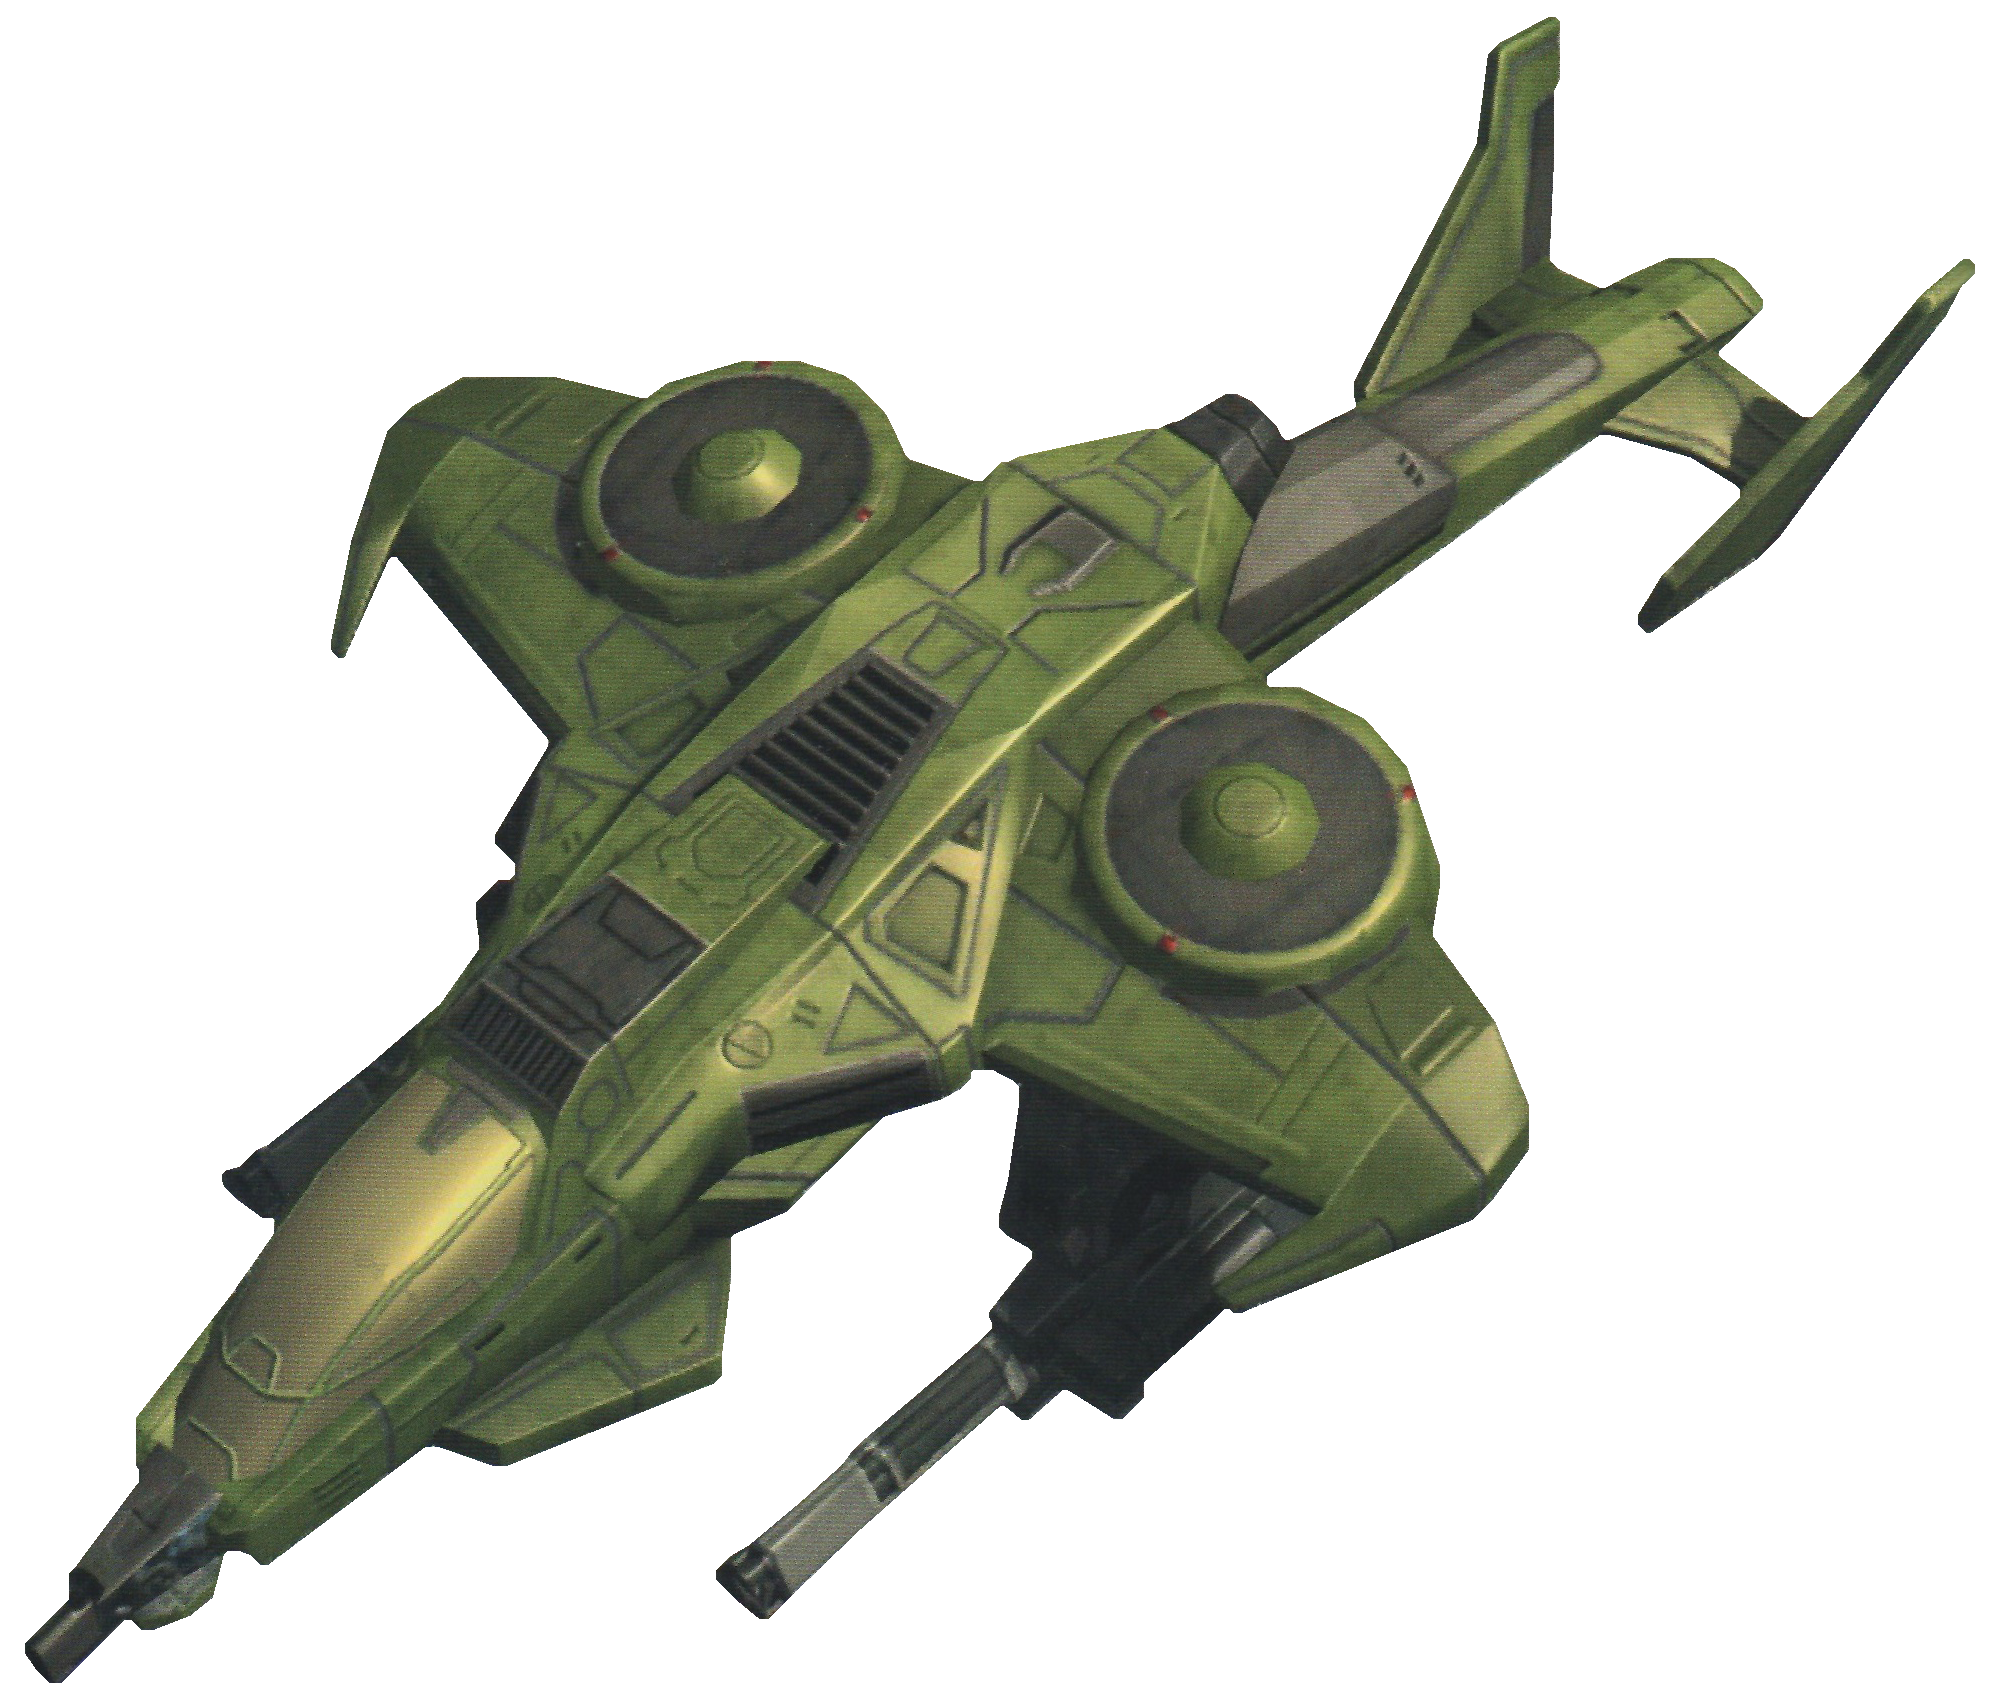 EVG-Sparrowhawk (scan-render).png